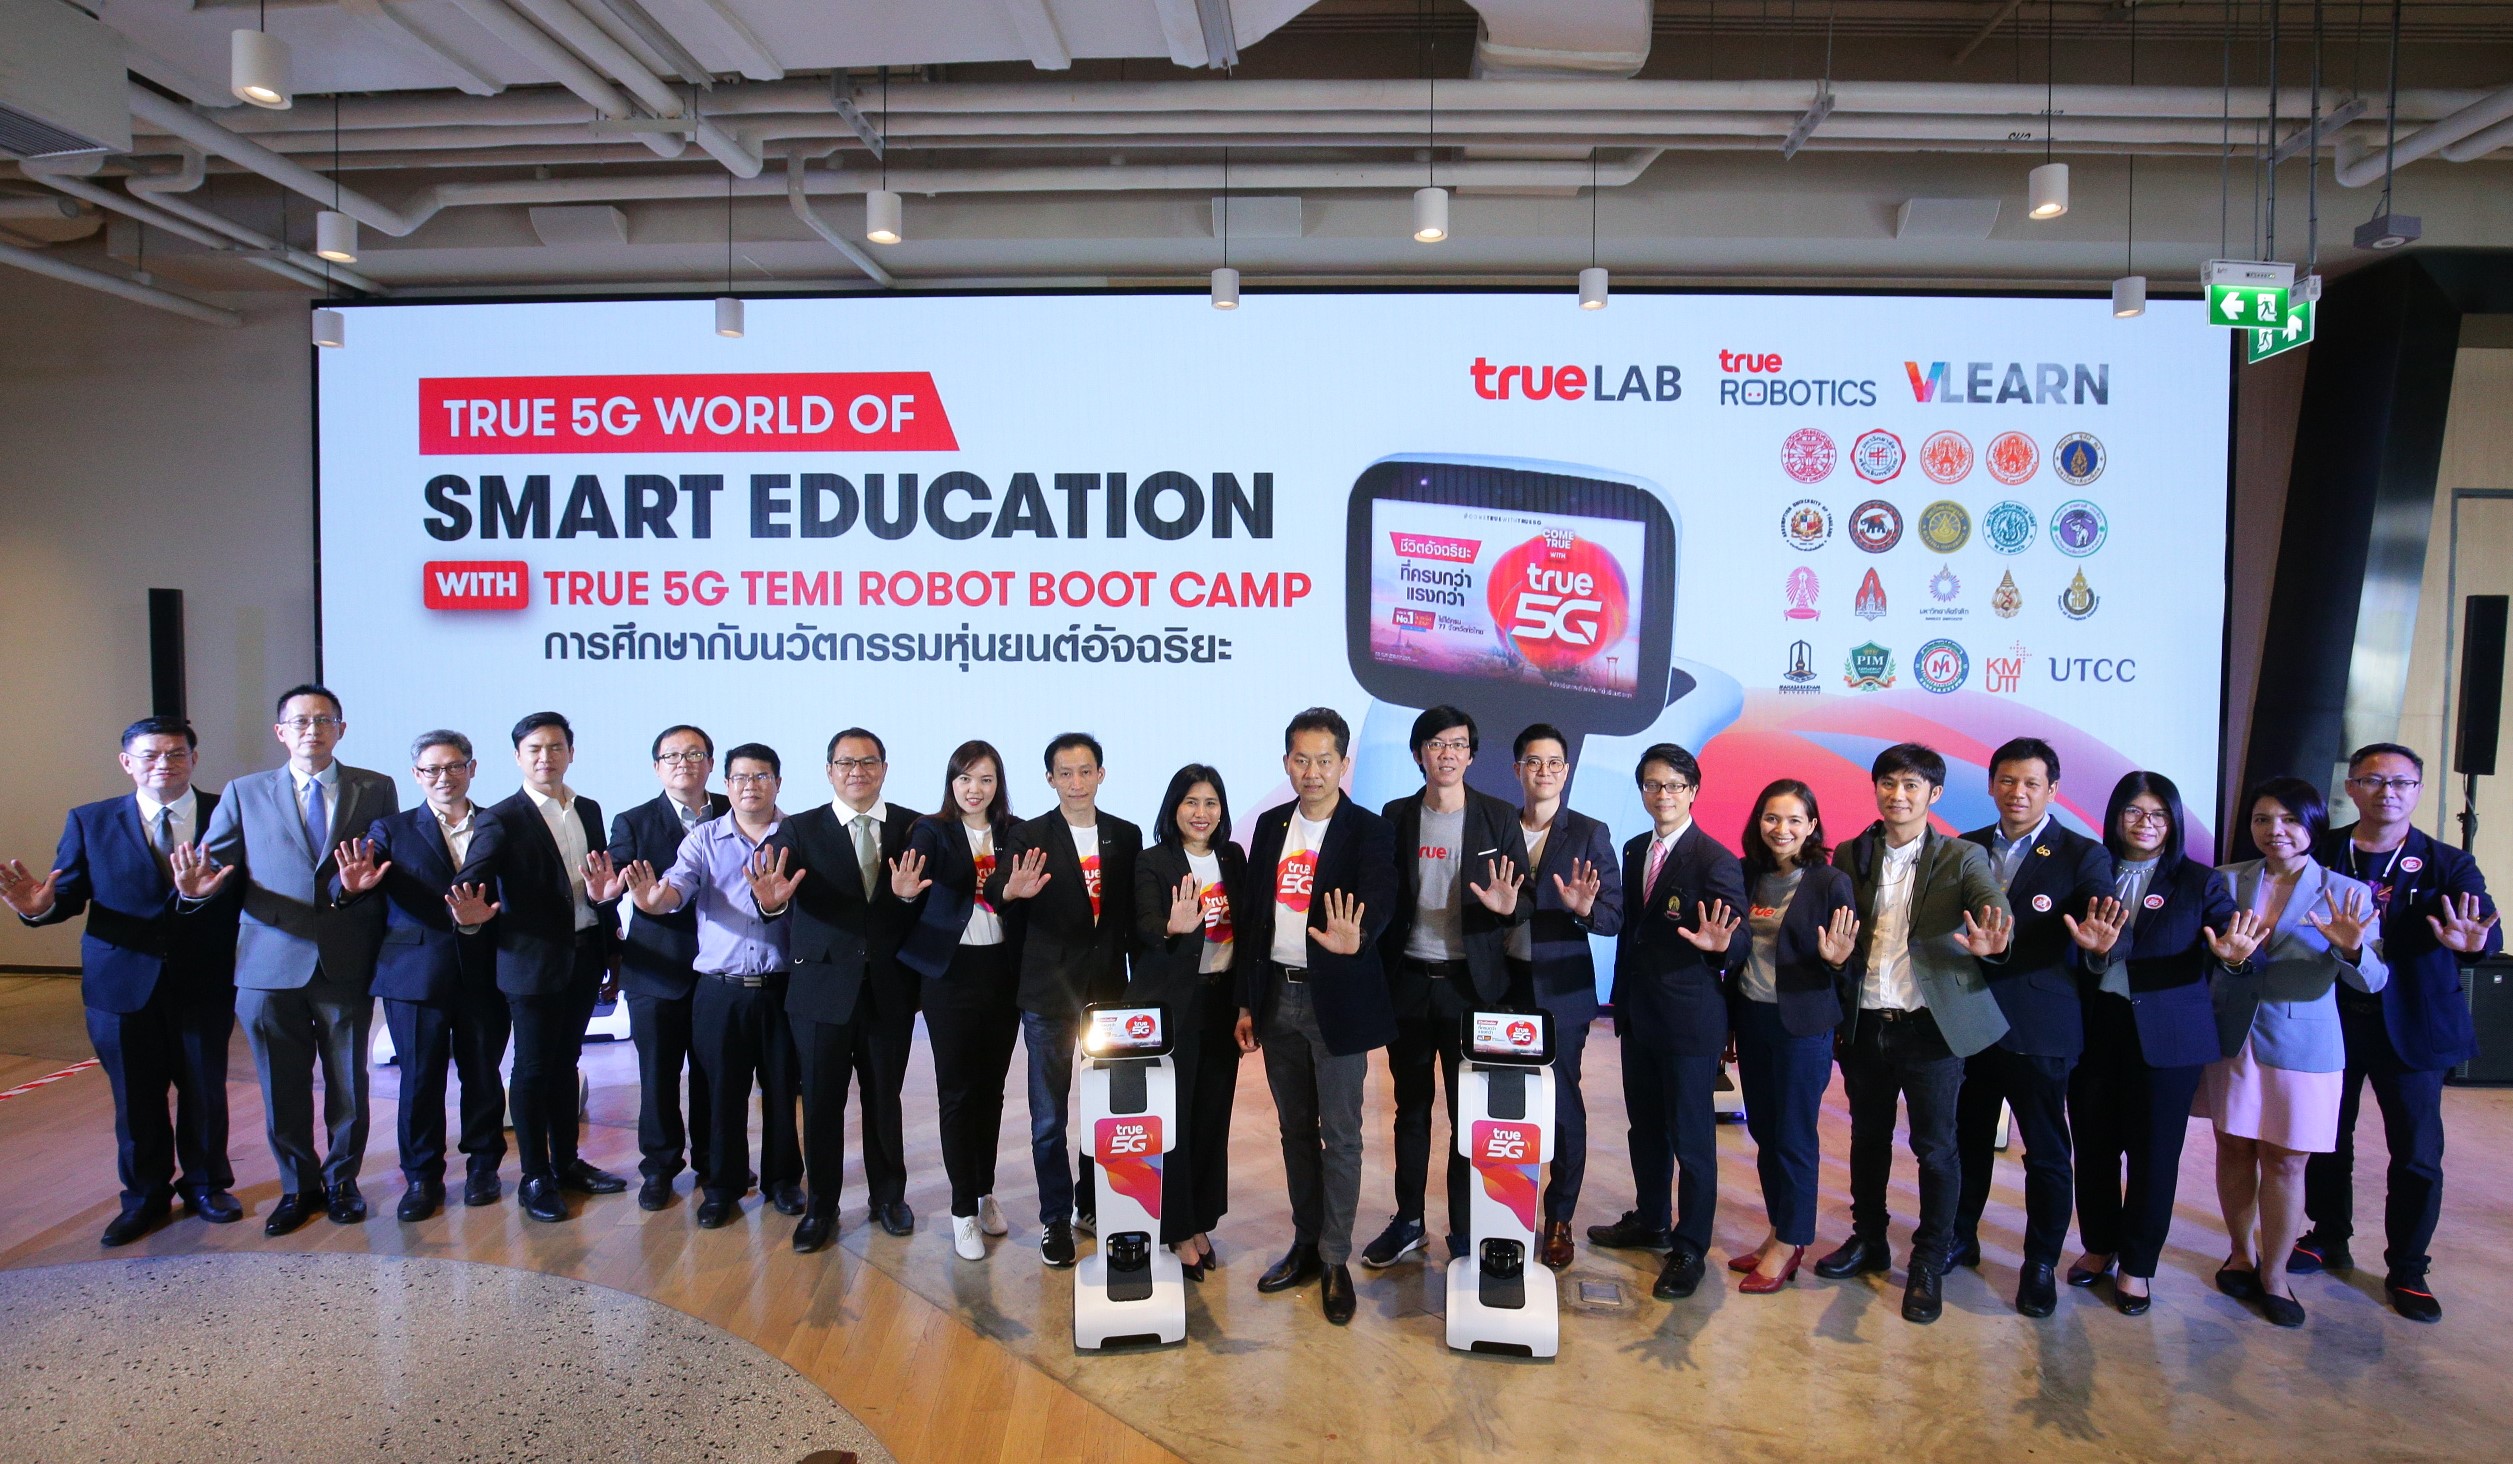 ทรู 5G สร้างระบบนิเวศดิจิทัลเพื่อการศึกษาไทย ยกระดับสู่ Smart Education Smart University ส่งหุ่นยนต์อัจฉริยะ ลงพื้นที่ 20 มหาวิทยาลัยทั่วประเทศ